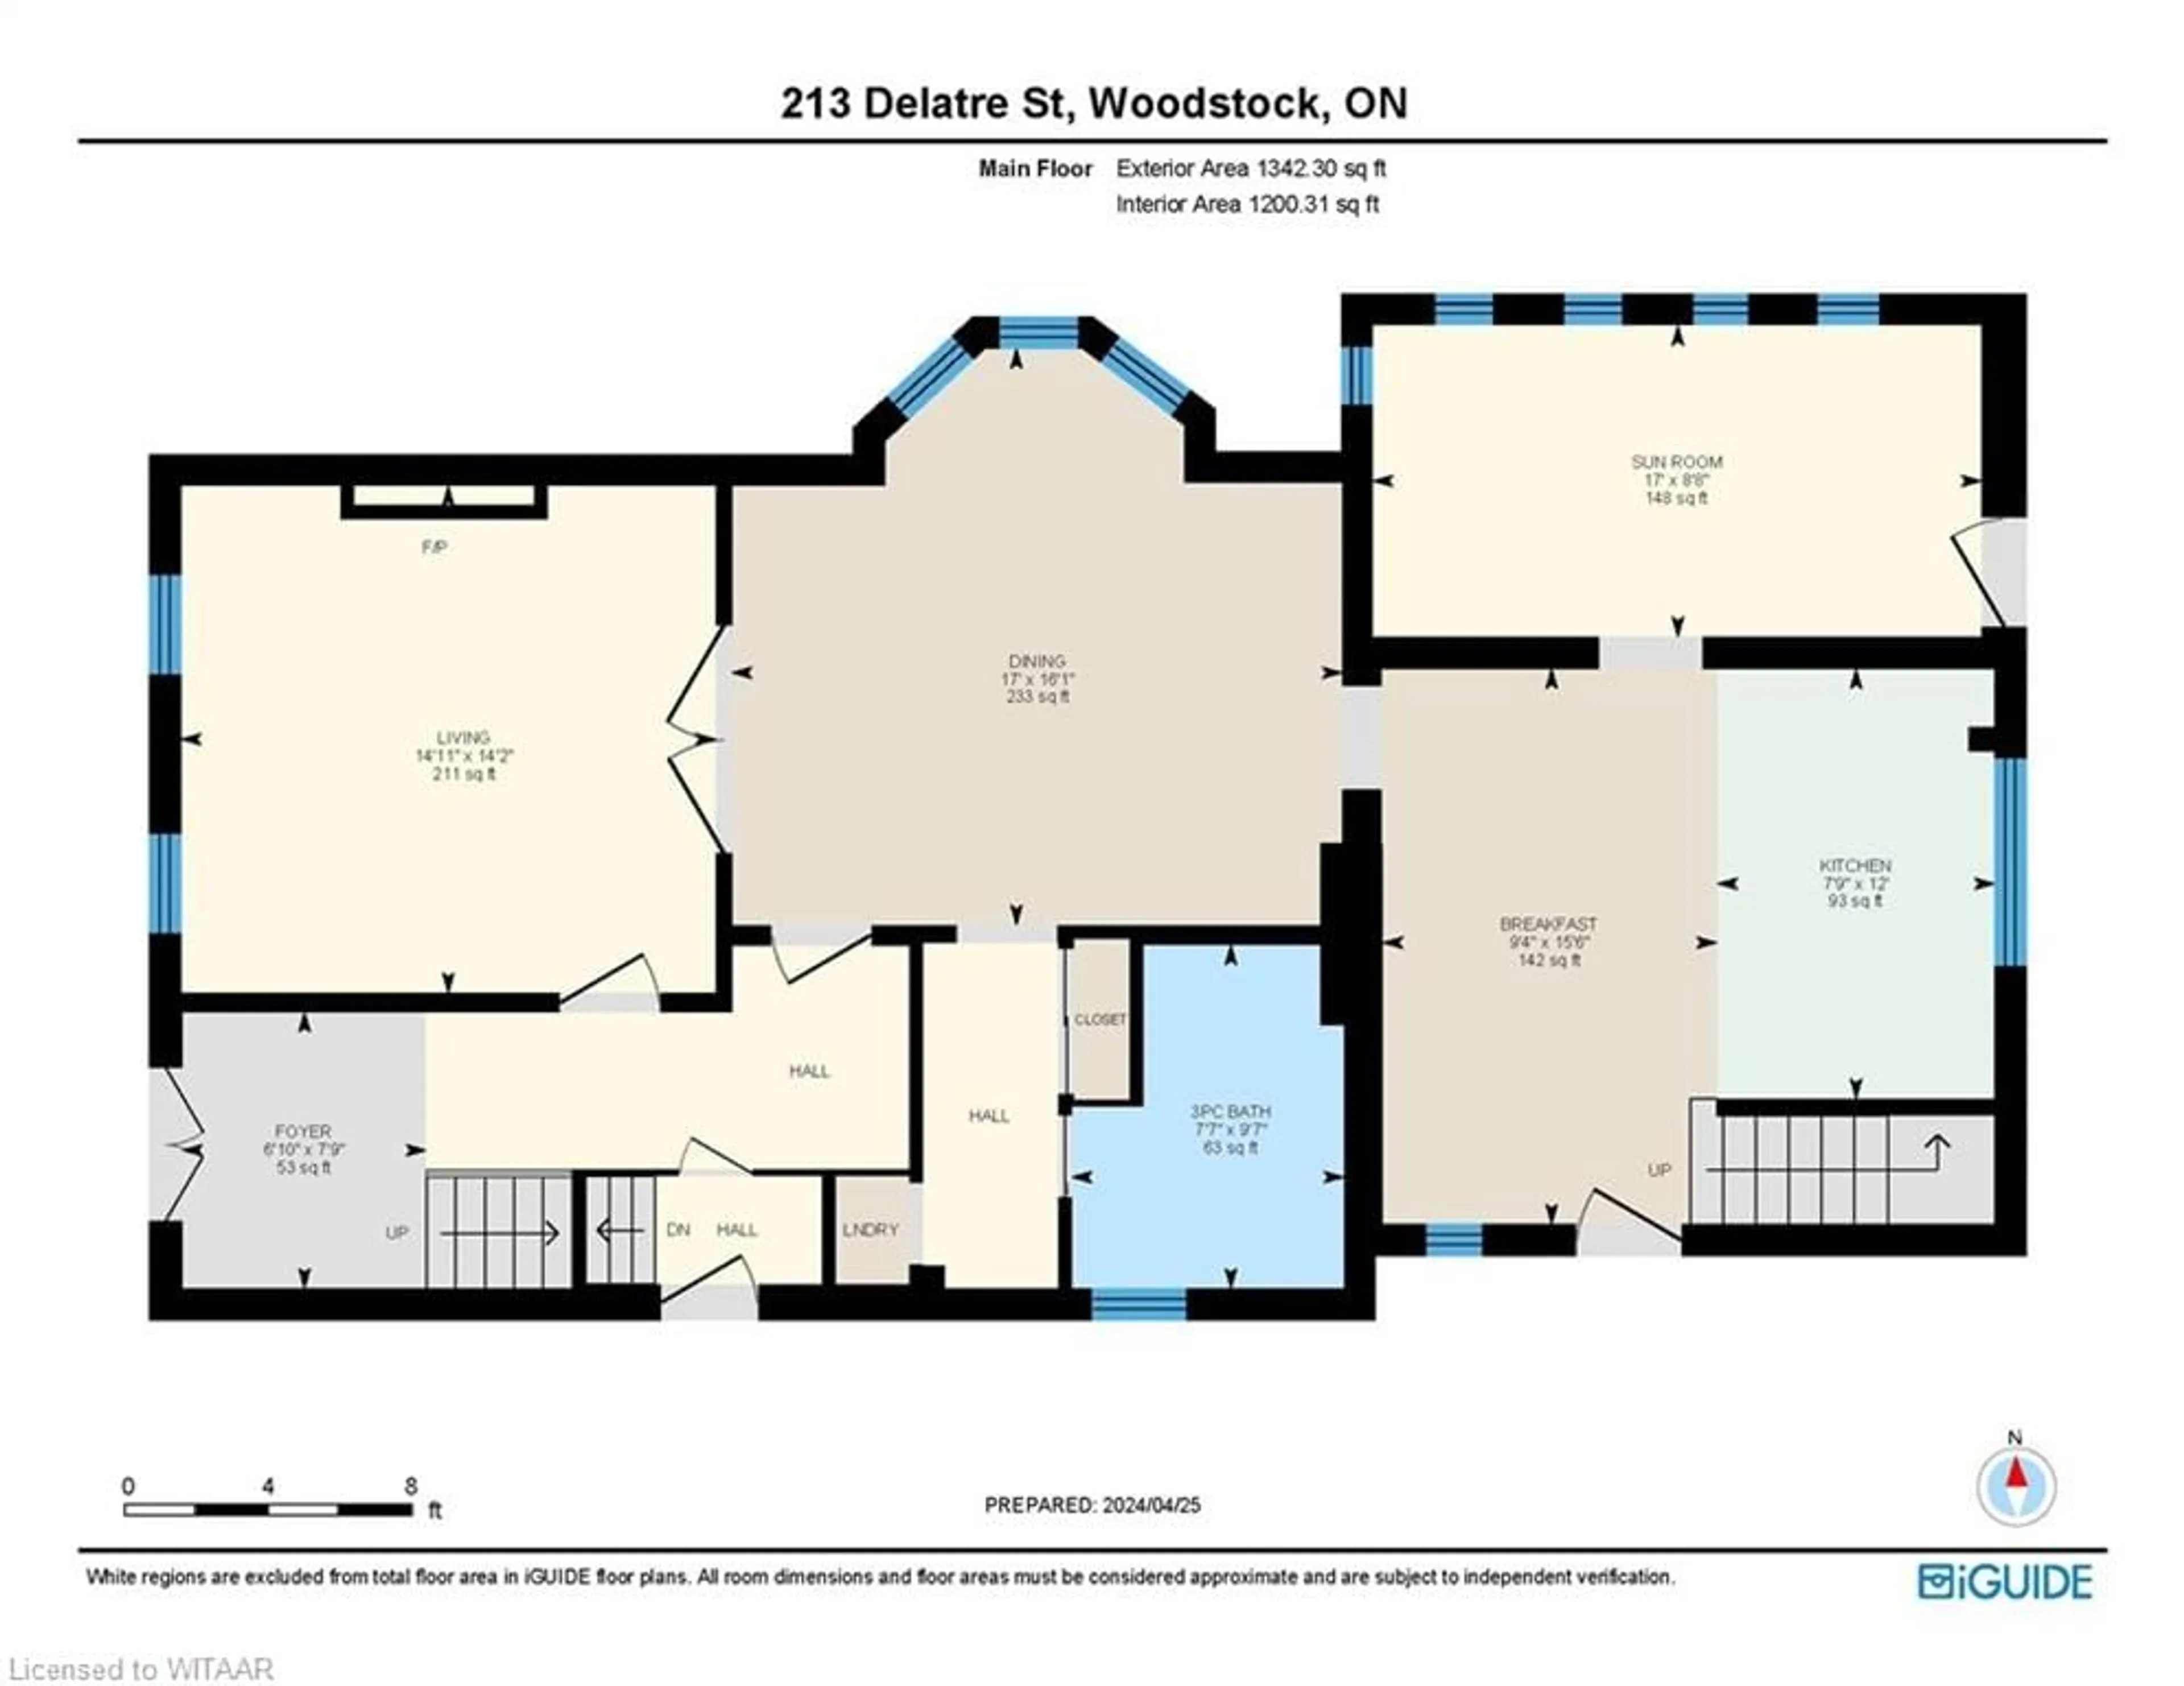 Floor plan for 213 Delatre St, Woodstock Ontario N4S 6C4